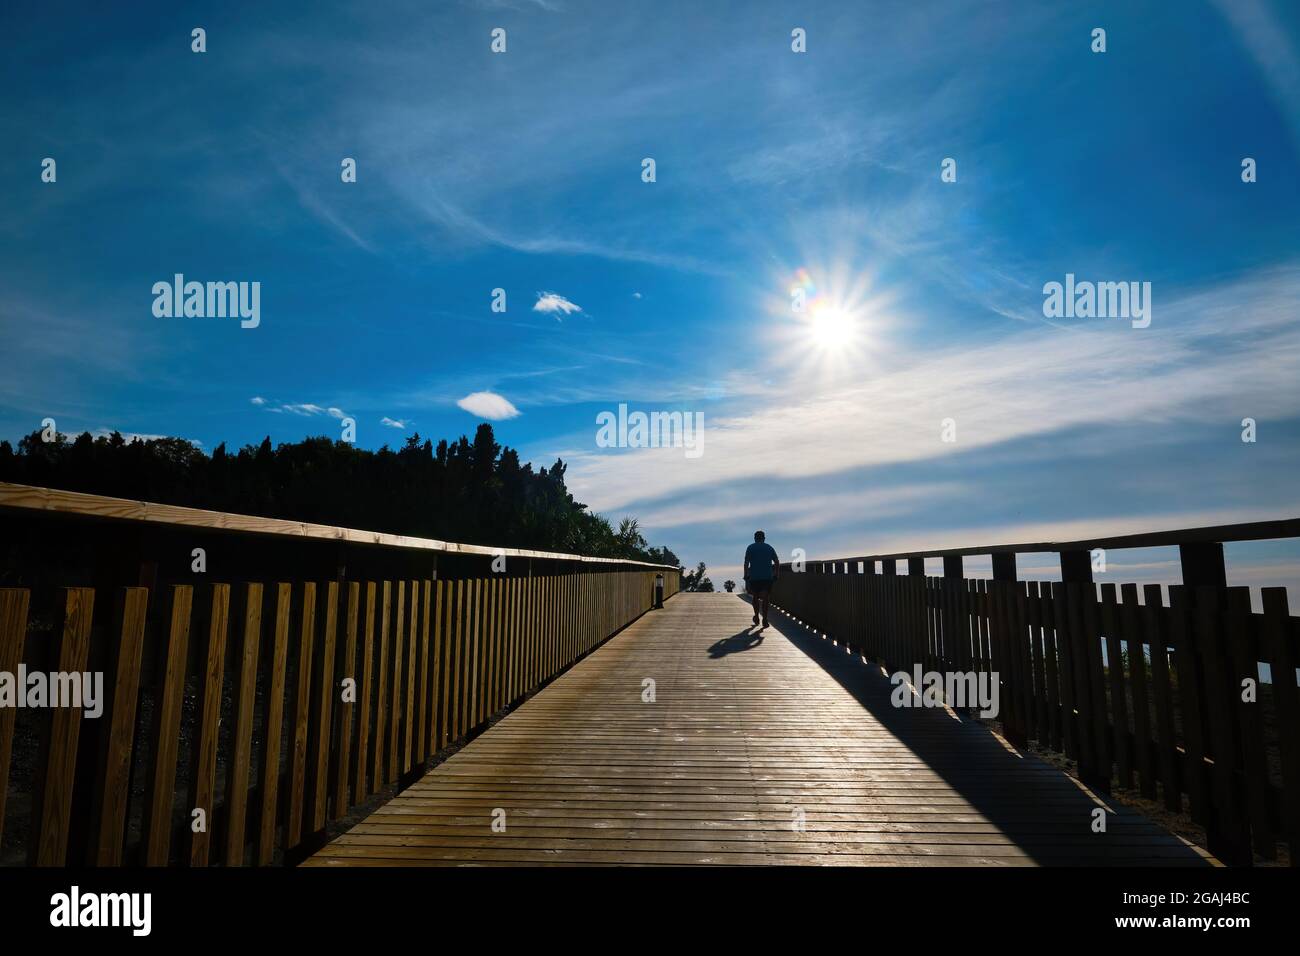 Splendida alba dal lungomare di legno con la silhouette di un uomo che cammina Foto Stock